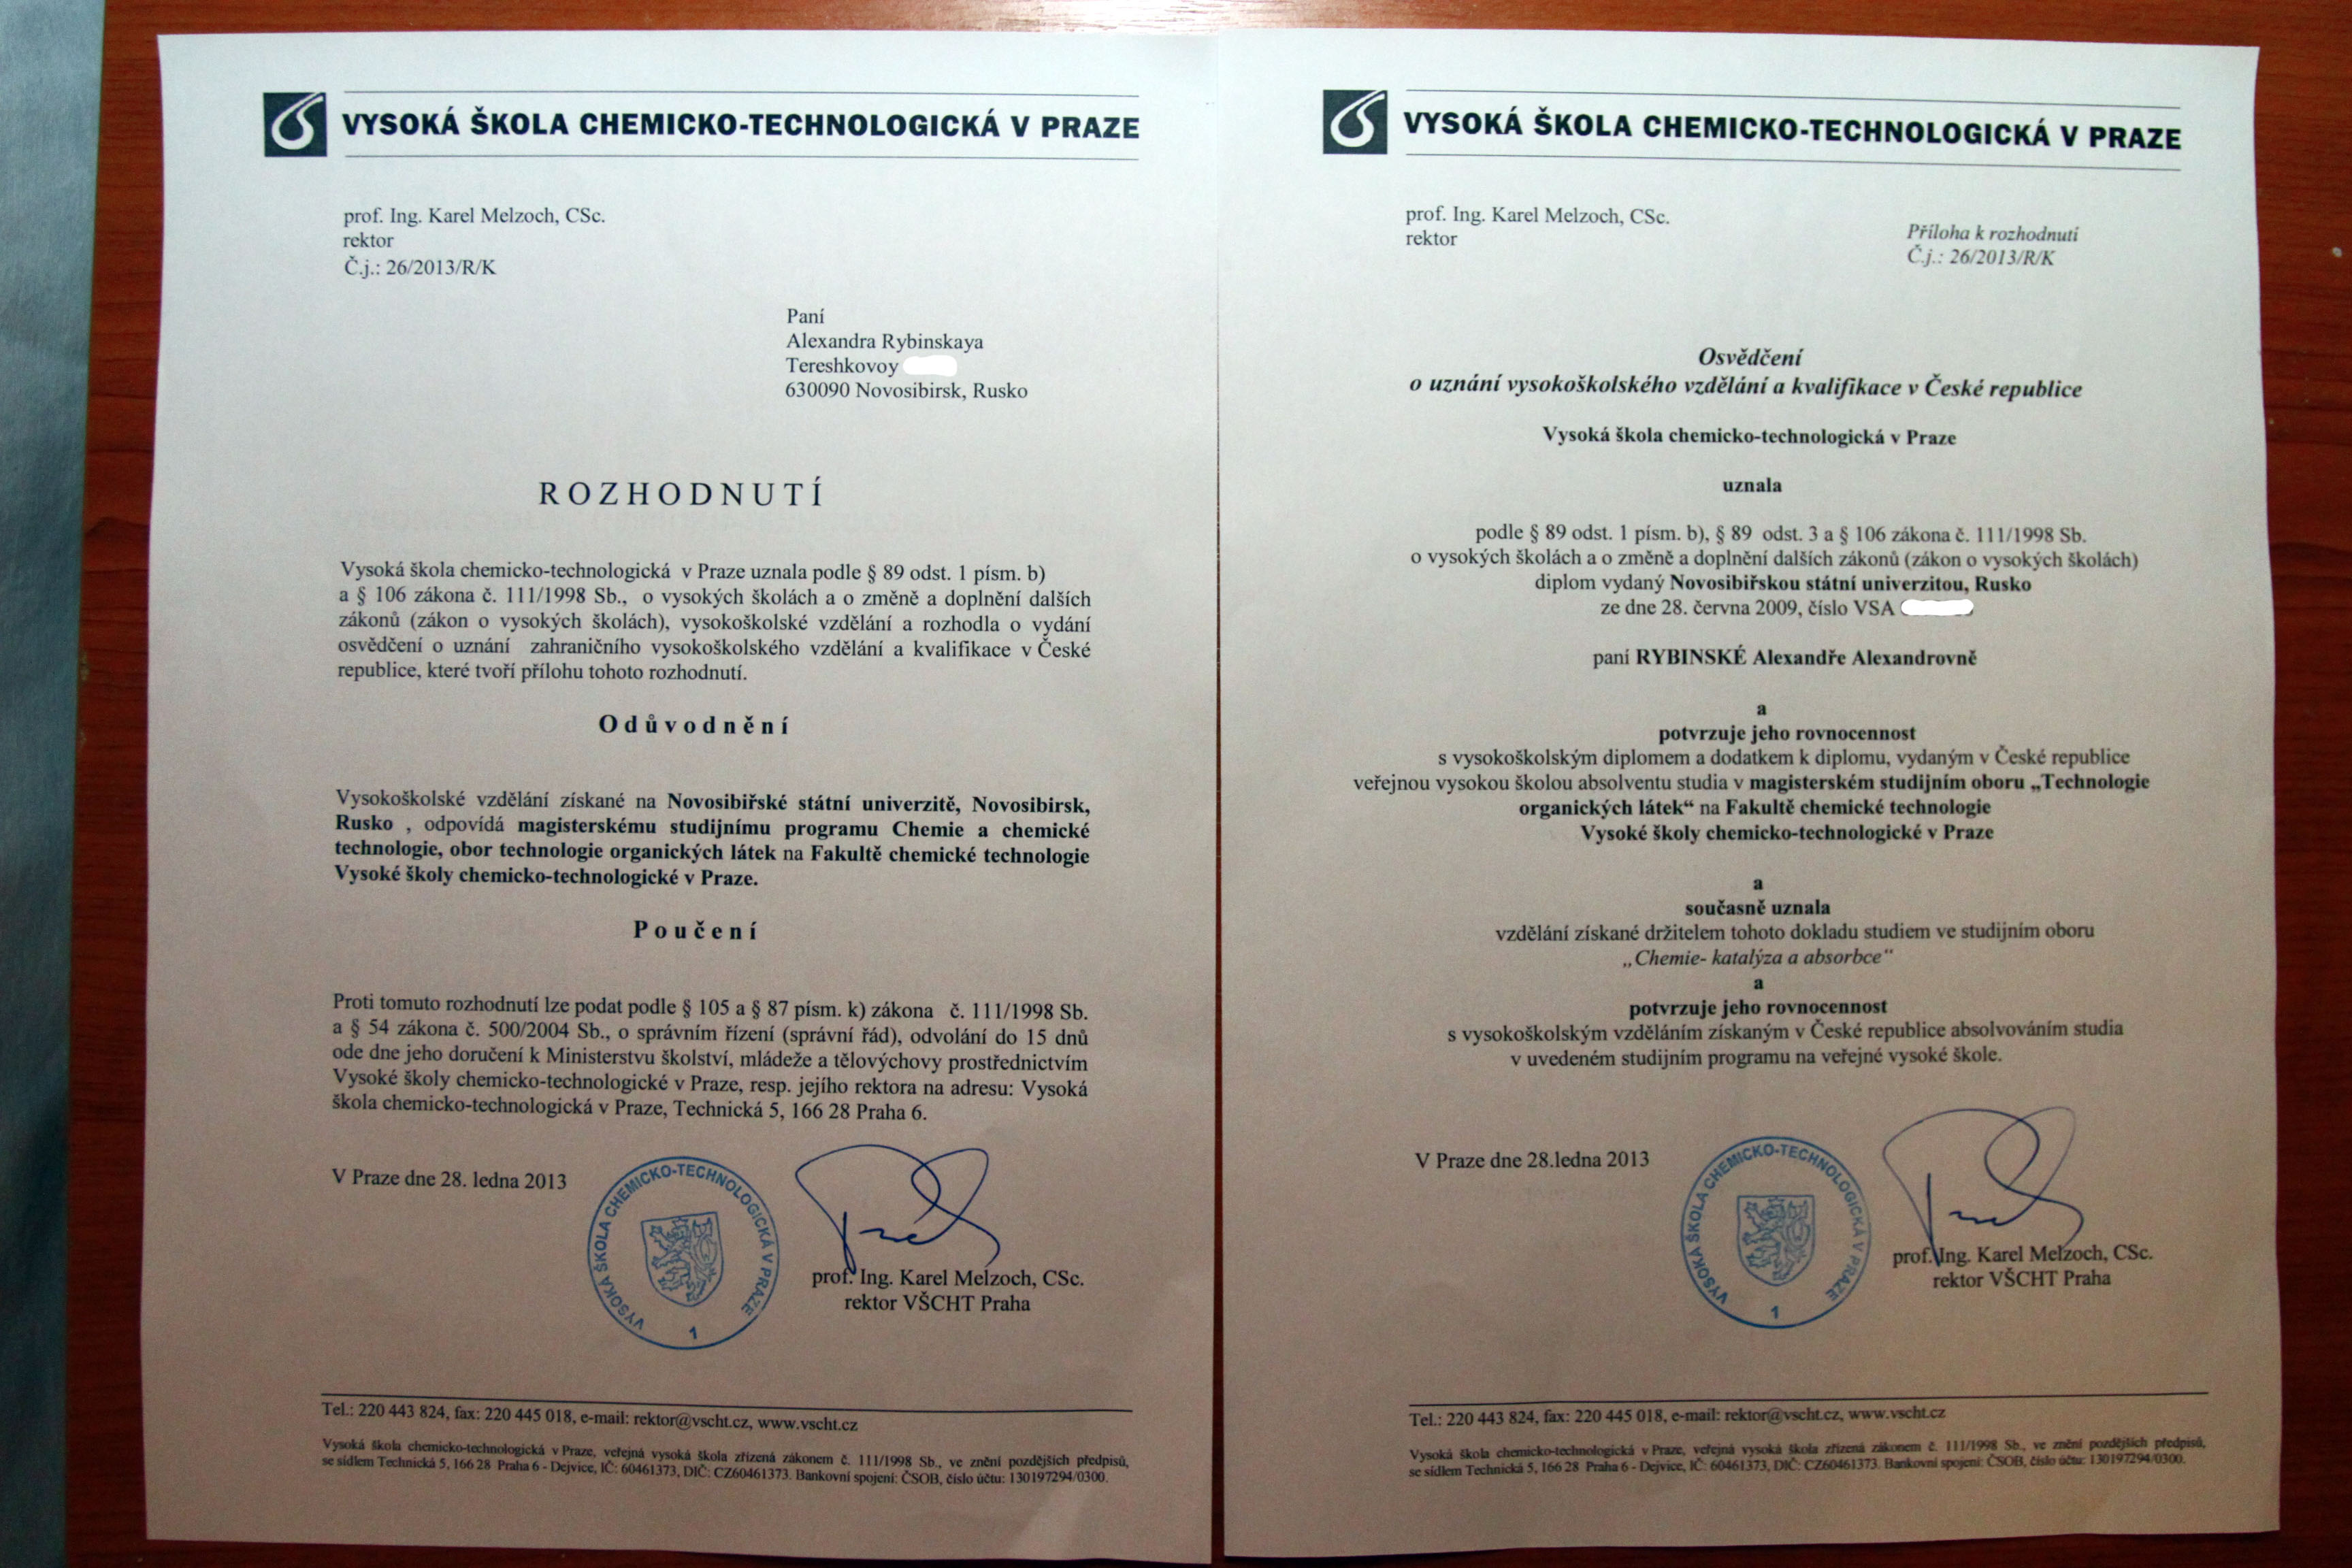 Подтверждение диплома в россии для иностранных граждан